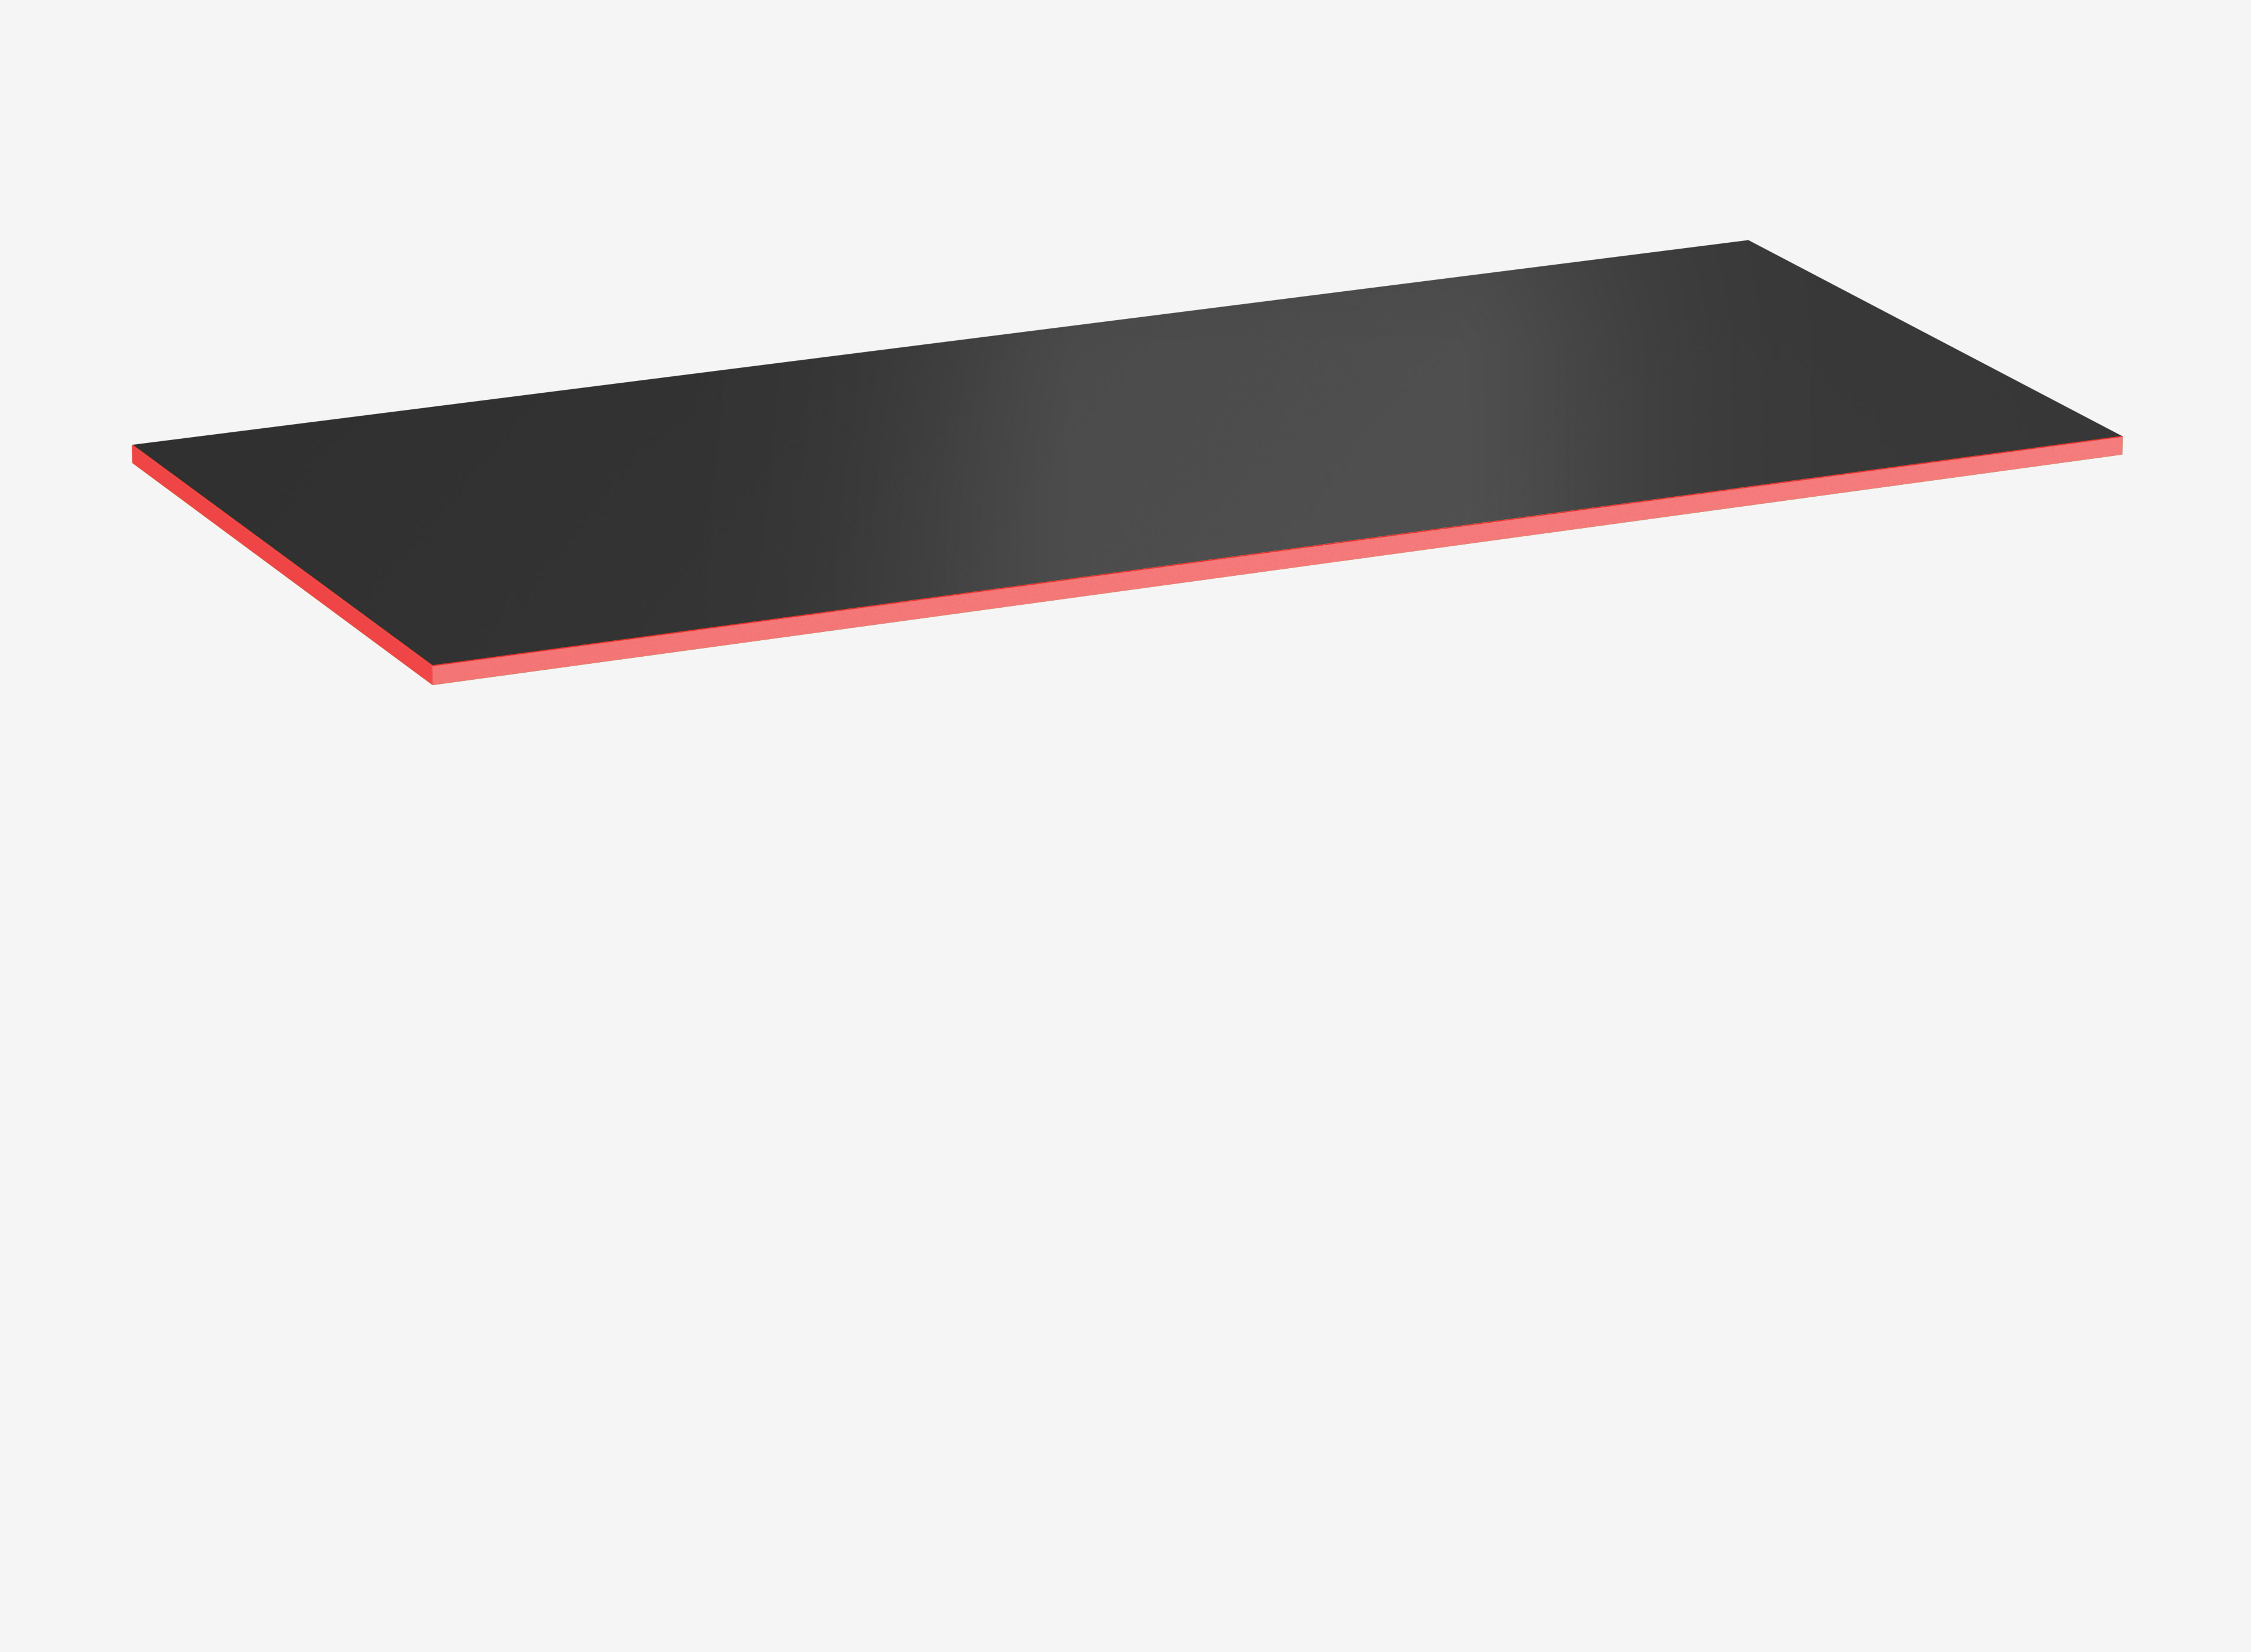 Gamingtischplatte Rechteck, Schwarz, Silk Touch, 1800 x 800 x 19 mm, Kante Fire Red